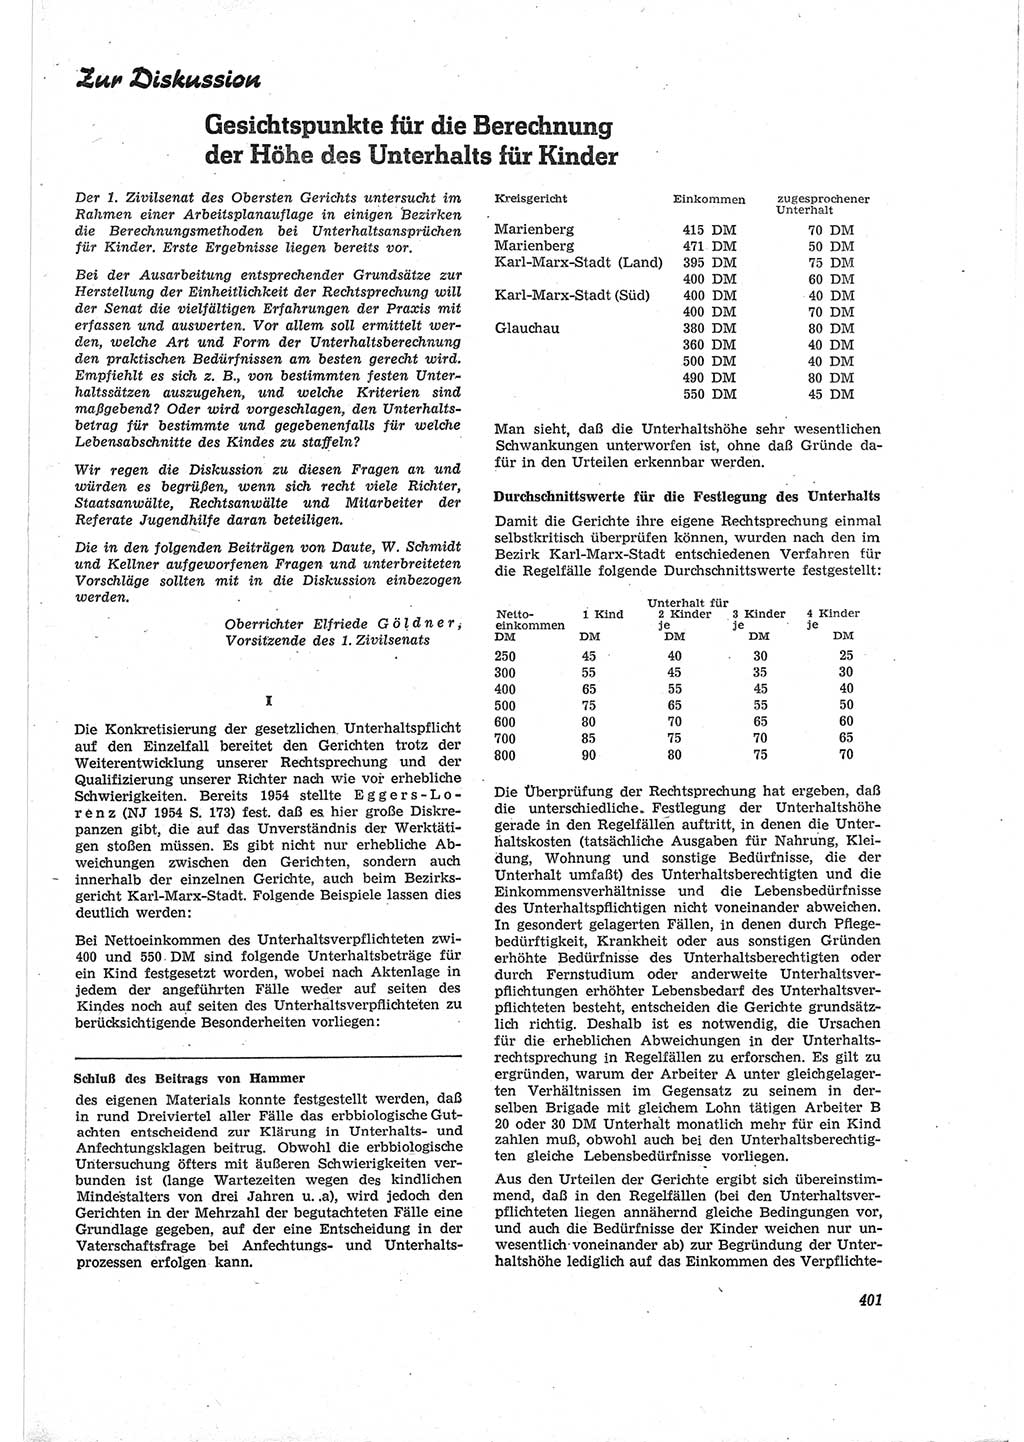 Neue Justiz (NJ), Zeitschrift für Recht und Rechtswissenschaft [Deutsche Demokratische Republik (DDR)], 18. Jahrgang 1964, Seite 401 (NJ DDR 1964, S. 401)